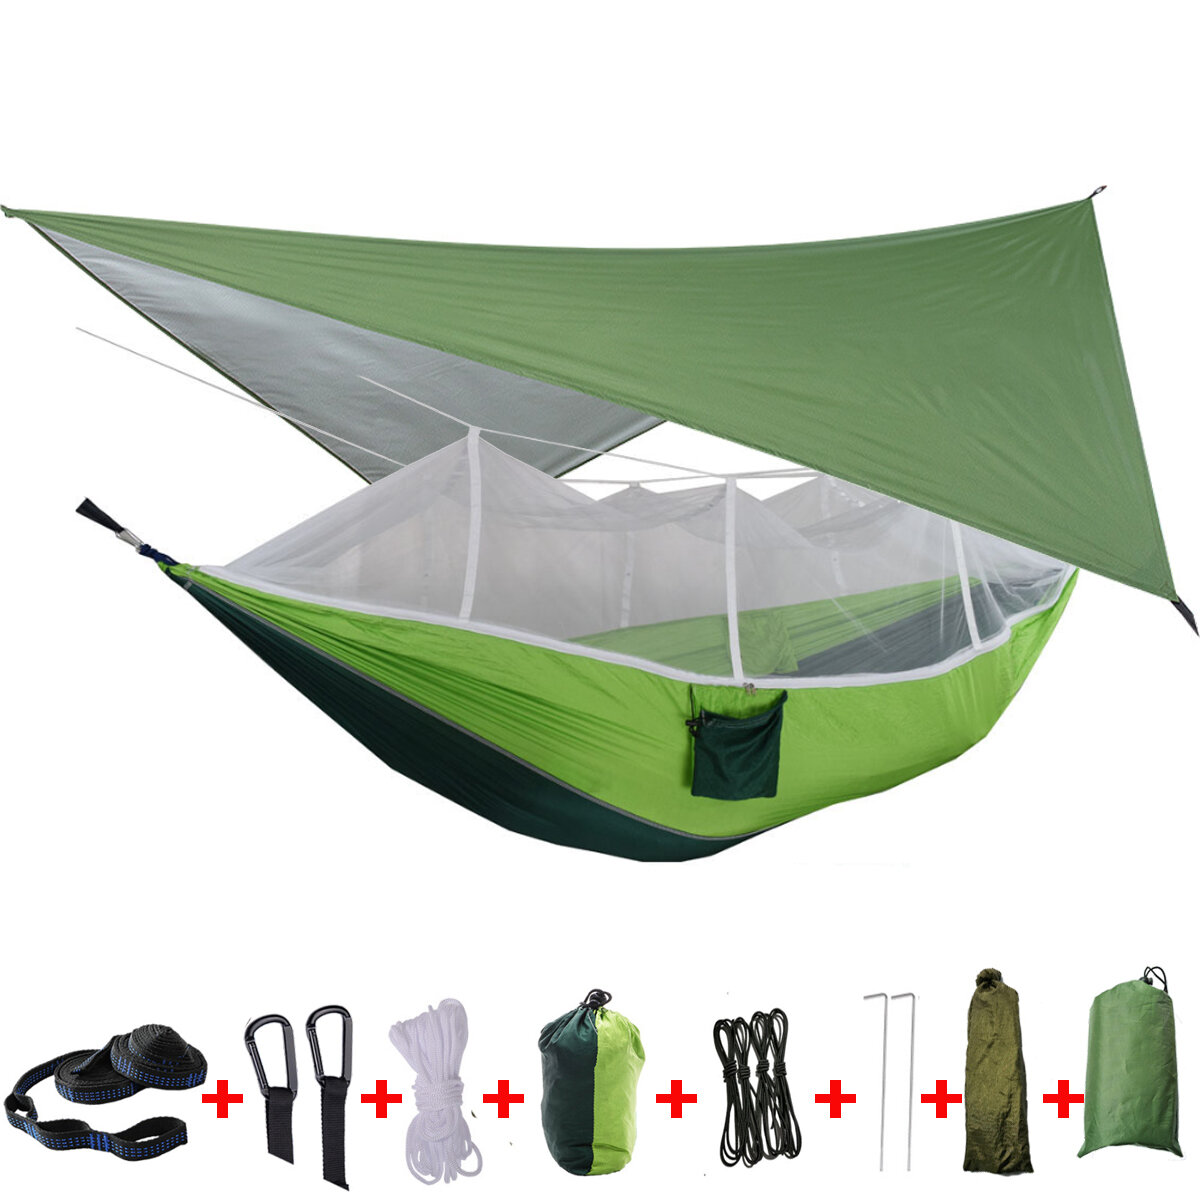 Tienda hamaca de camping para 2 personas IPRee® con mosquitera, cubierta para lluvia y cama doble colgante para viajes al aire libre